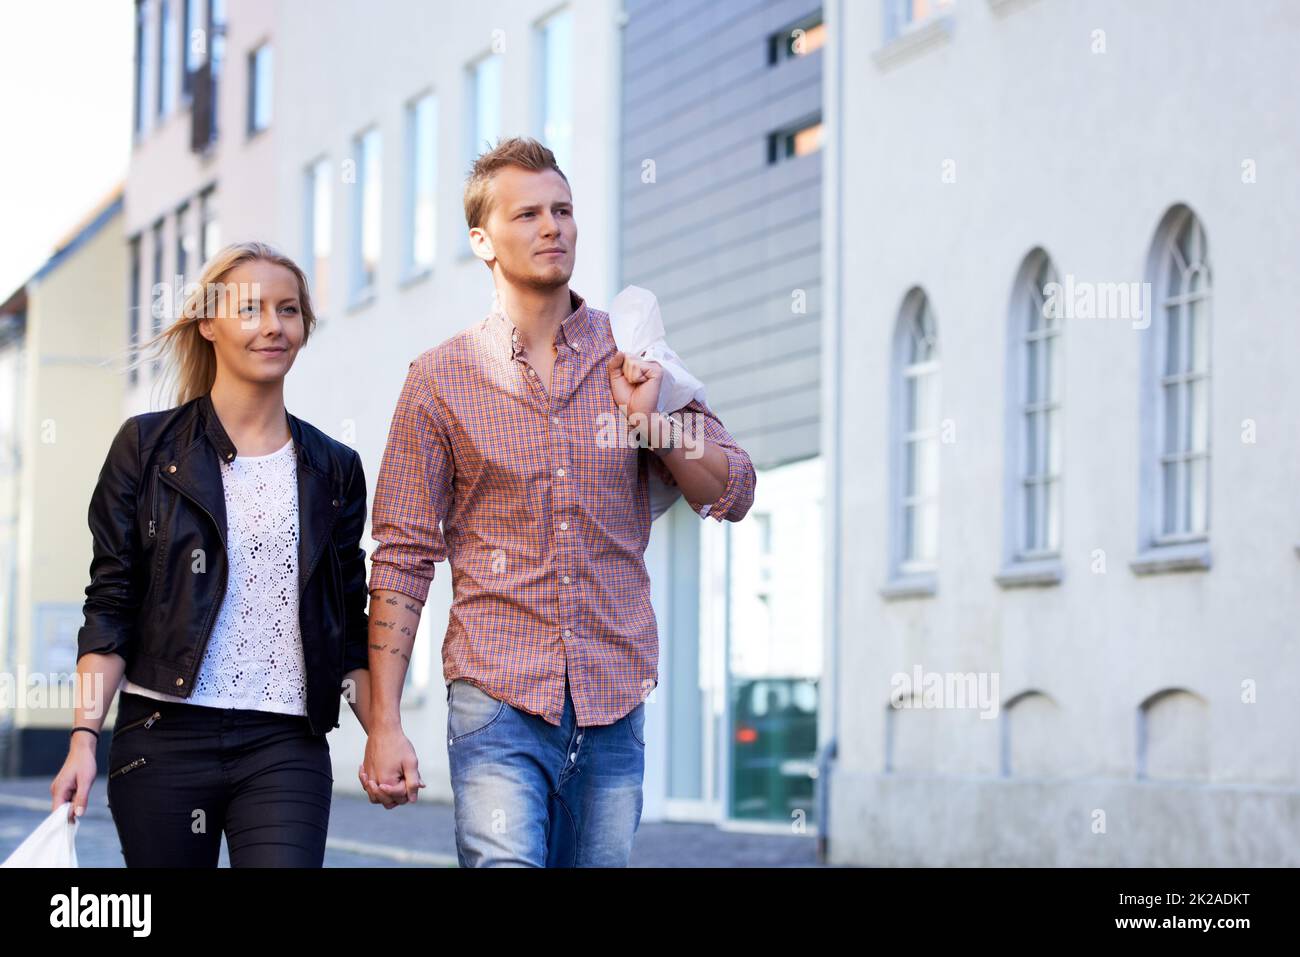 Passeggiando per le strade. Una giovane coppia felice che cammina a mano per le strade. Foto Stock